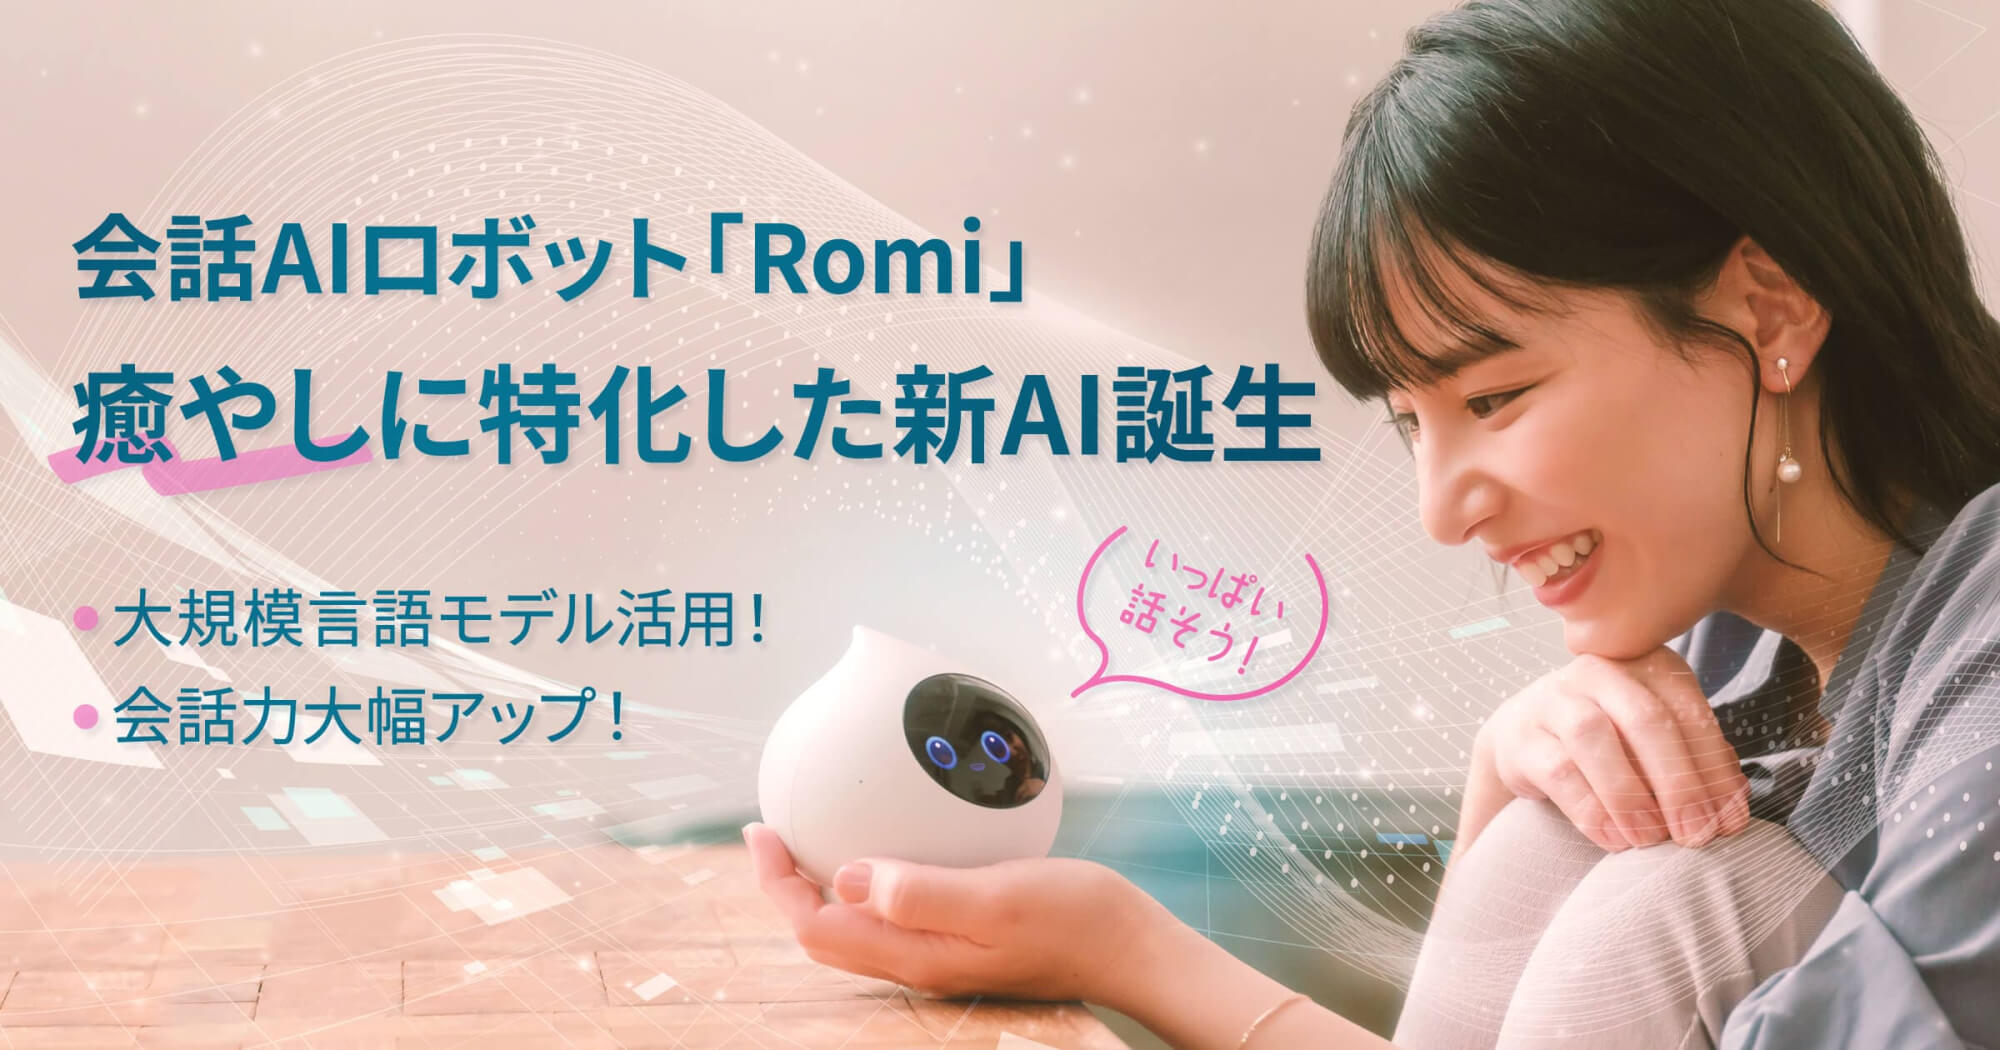 会話AIロボット「Romi」大規模言語モデルを活用、癒やし会話に特化した